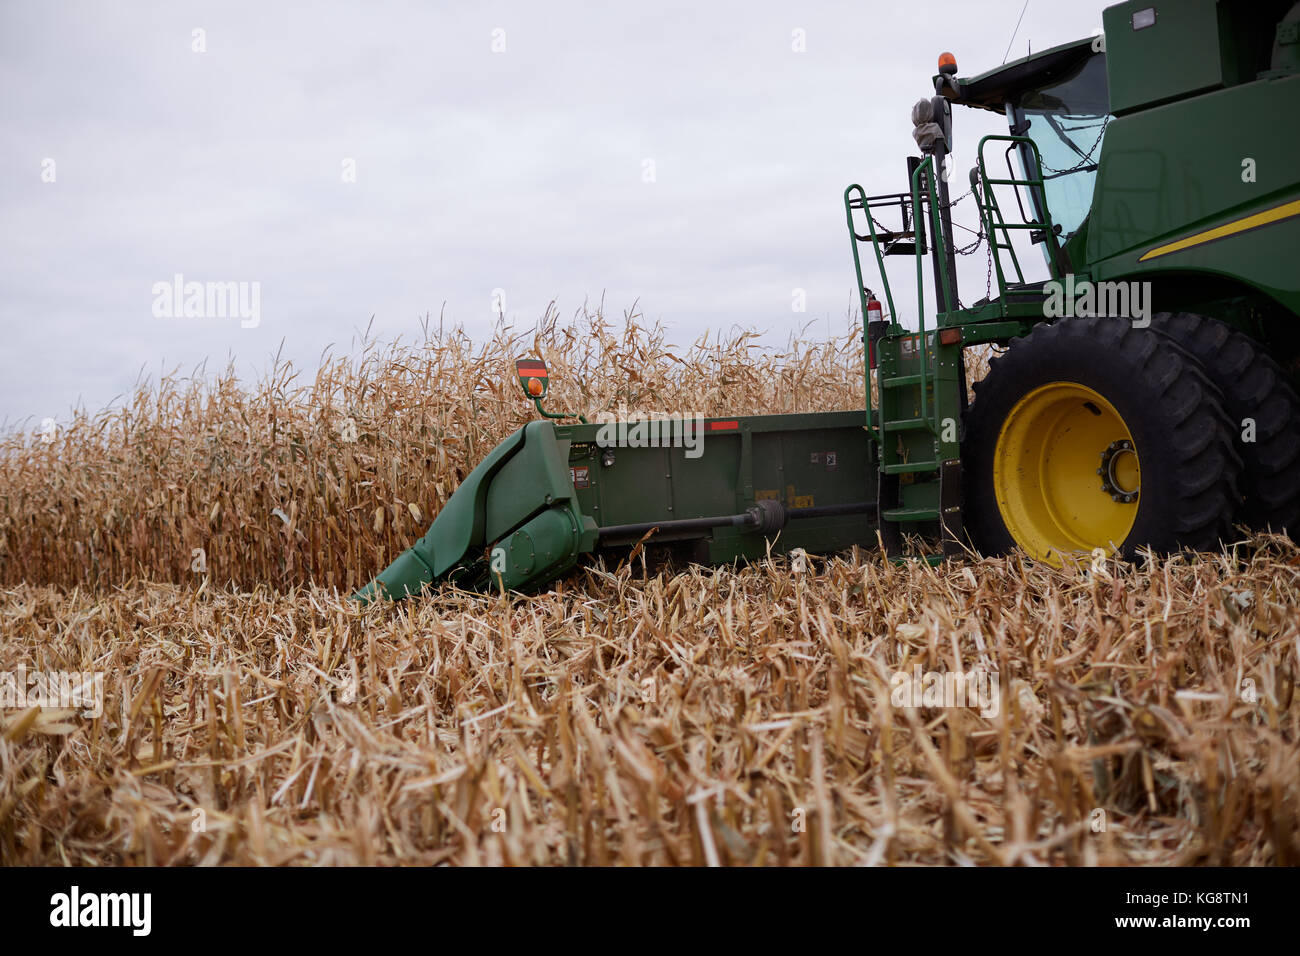 Cab et la barre de coupe de moissonneuse-batteuse une récolte d'un champ de maïs ou de maïs dans une vue en gros plan Banque D'Images